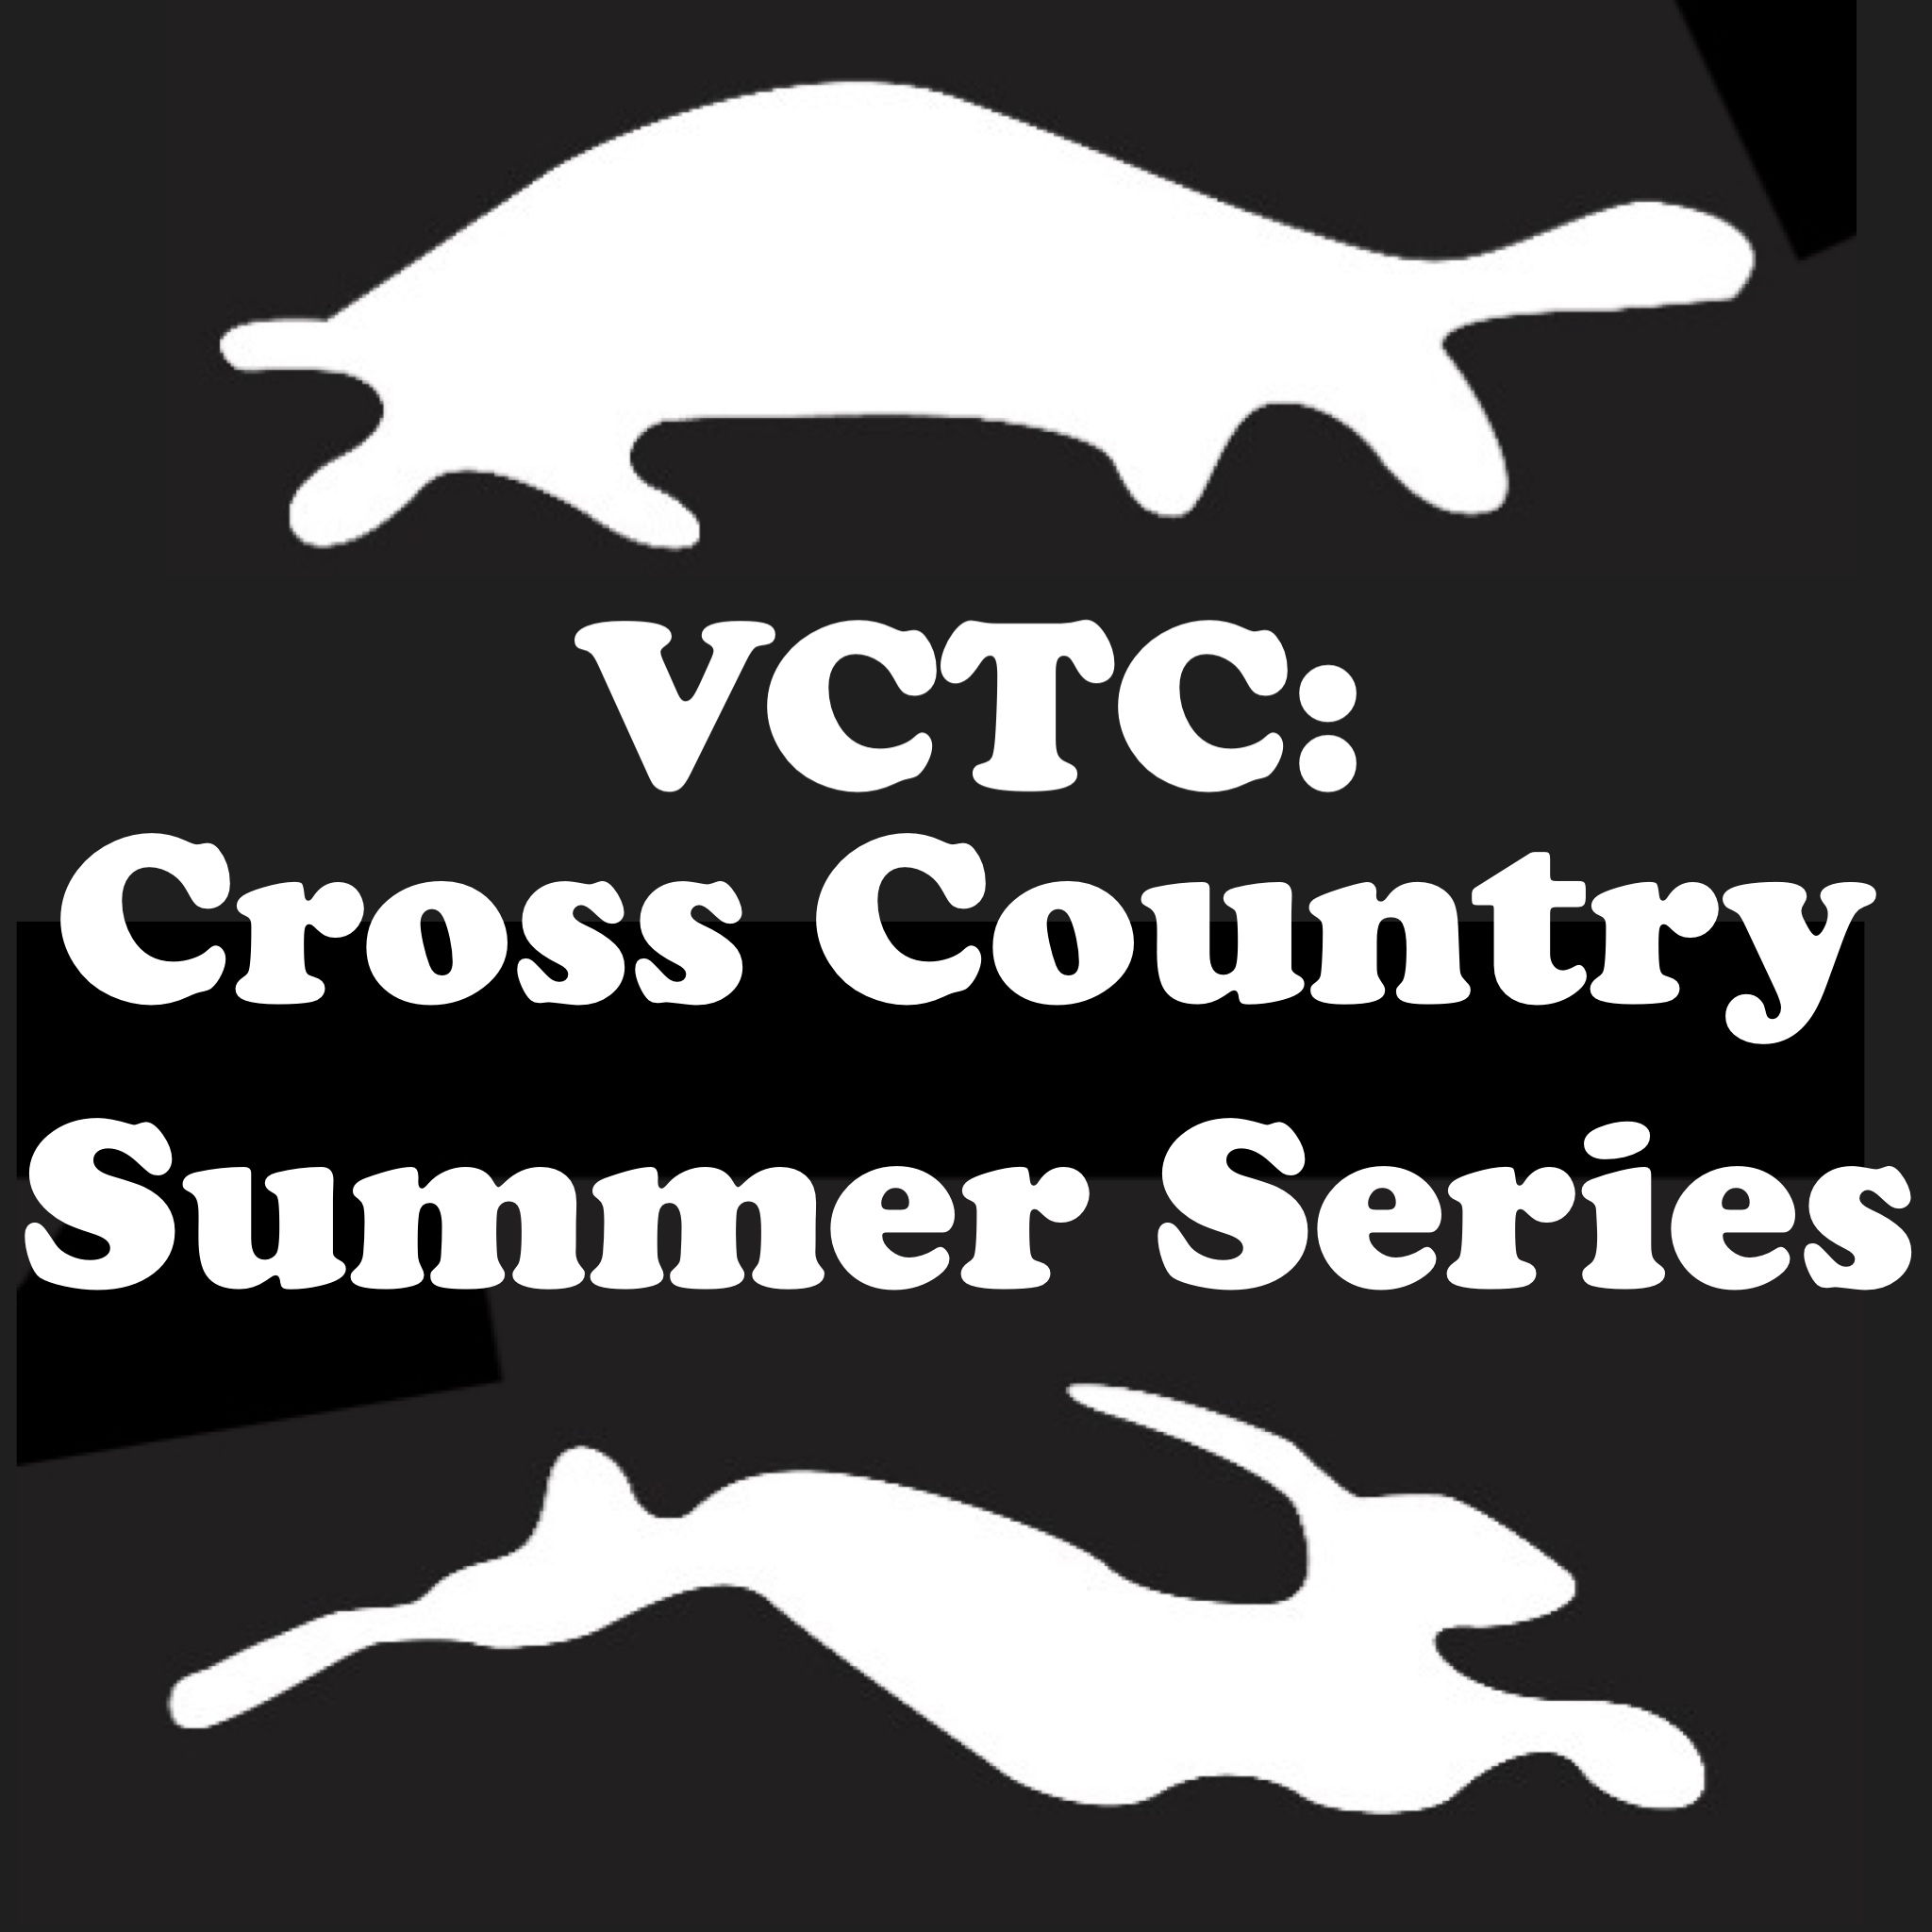 Van Cortlandt Track Club: Cross Country Summer Series #3 logo on RaceRaves